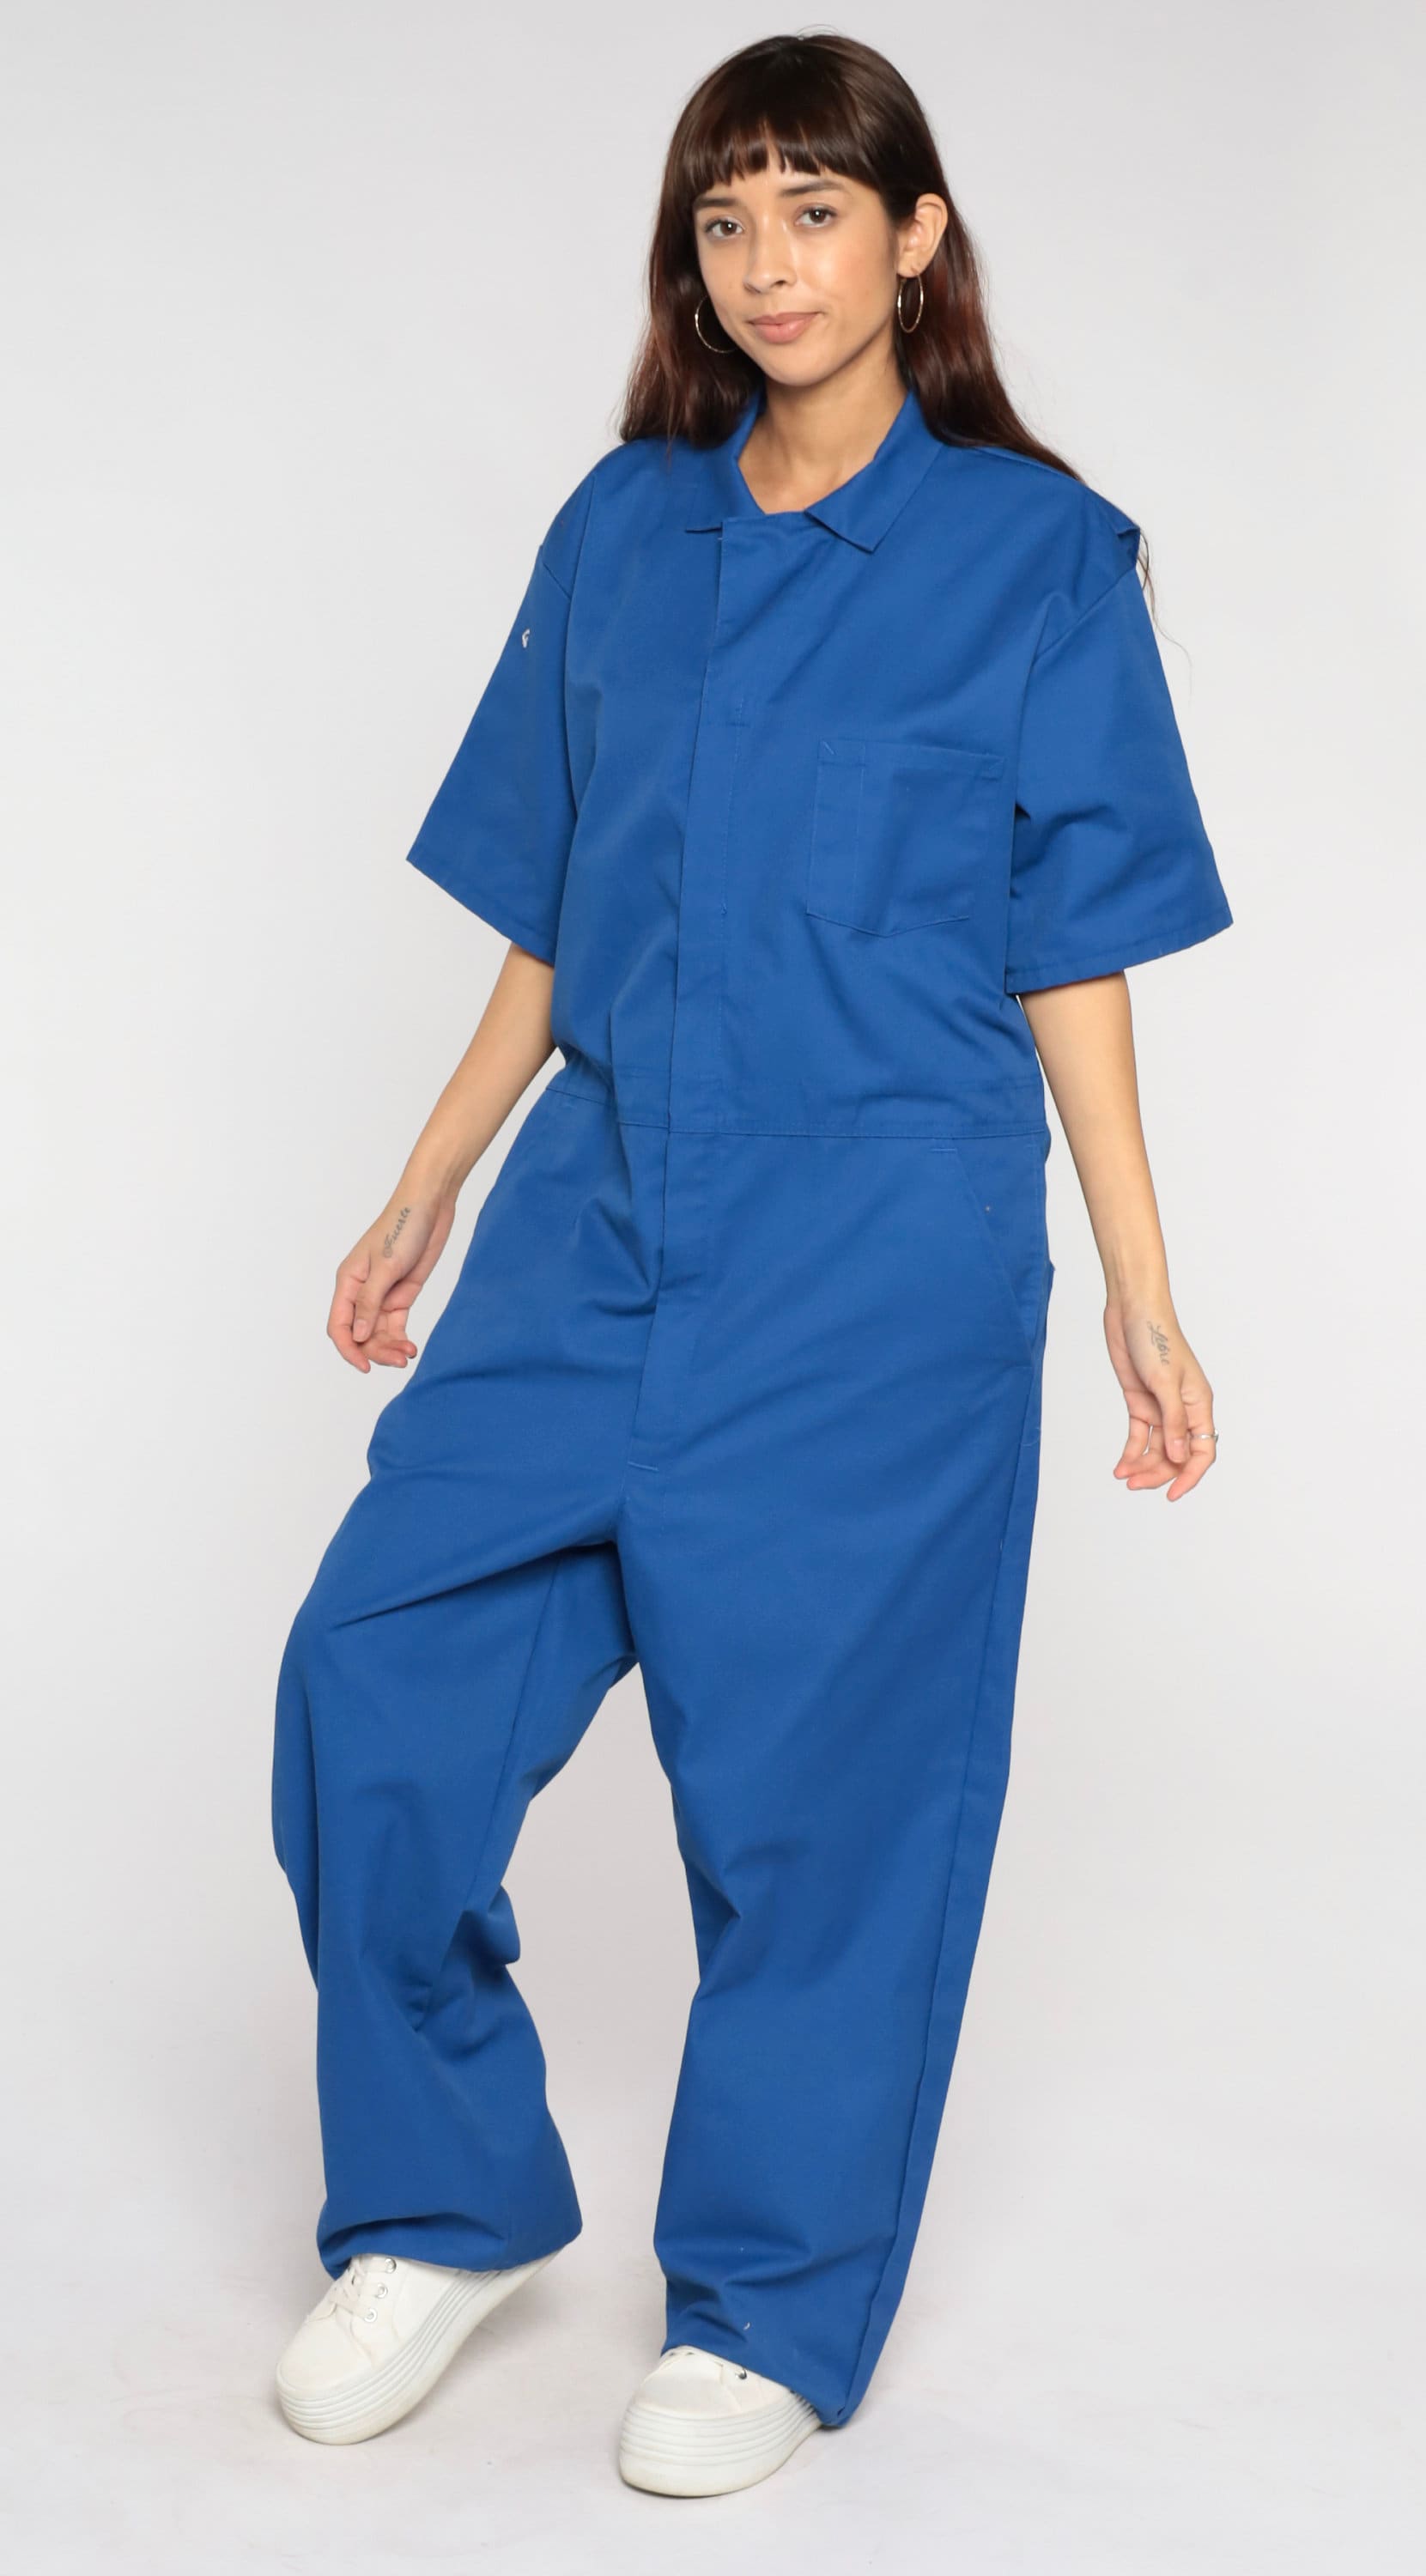 Blue Jumpsuit 90s Coveralls Retro Workwear Pants Boiler Suit Short ...